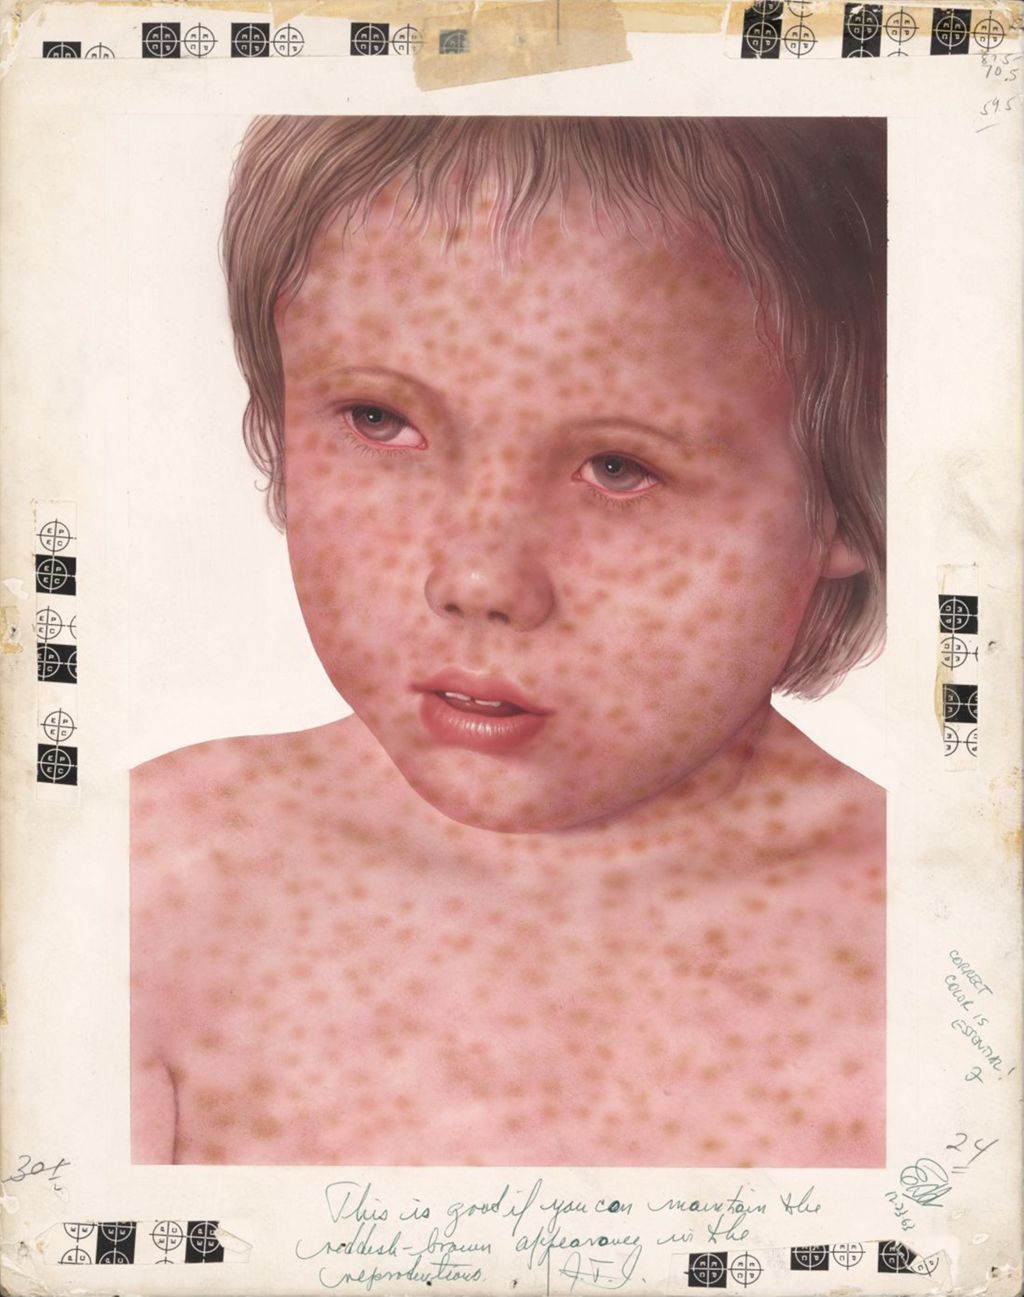 Rubeovax, Measles